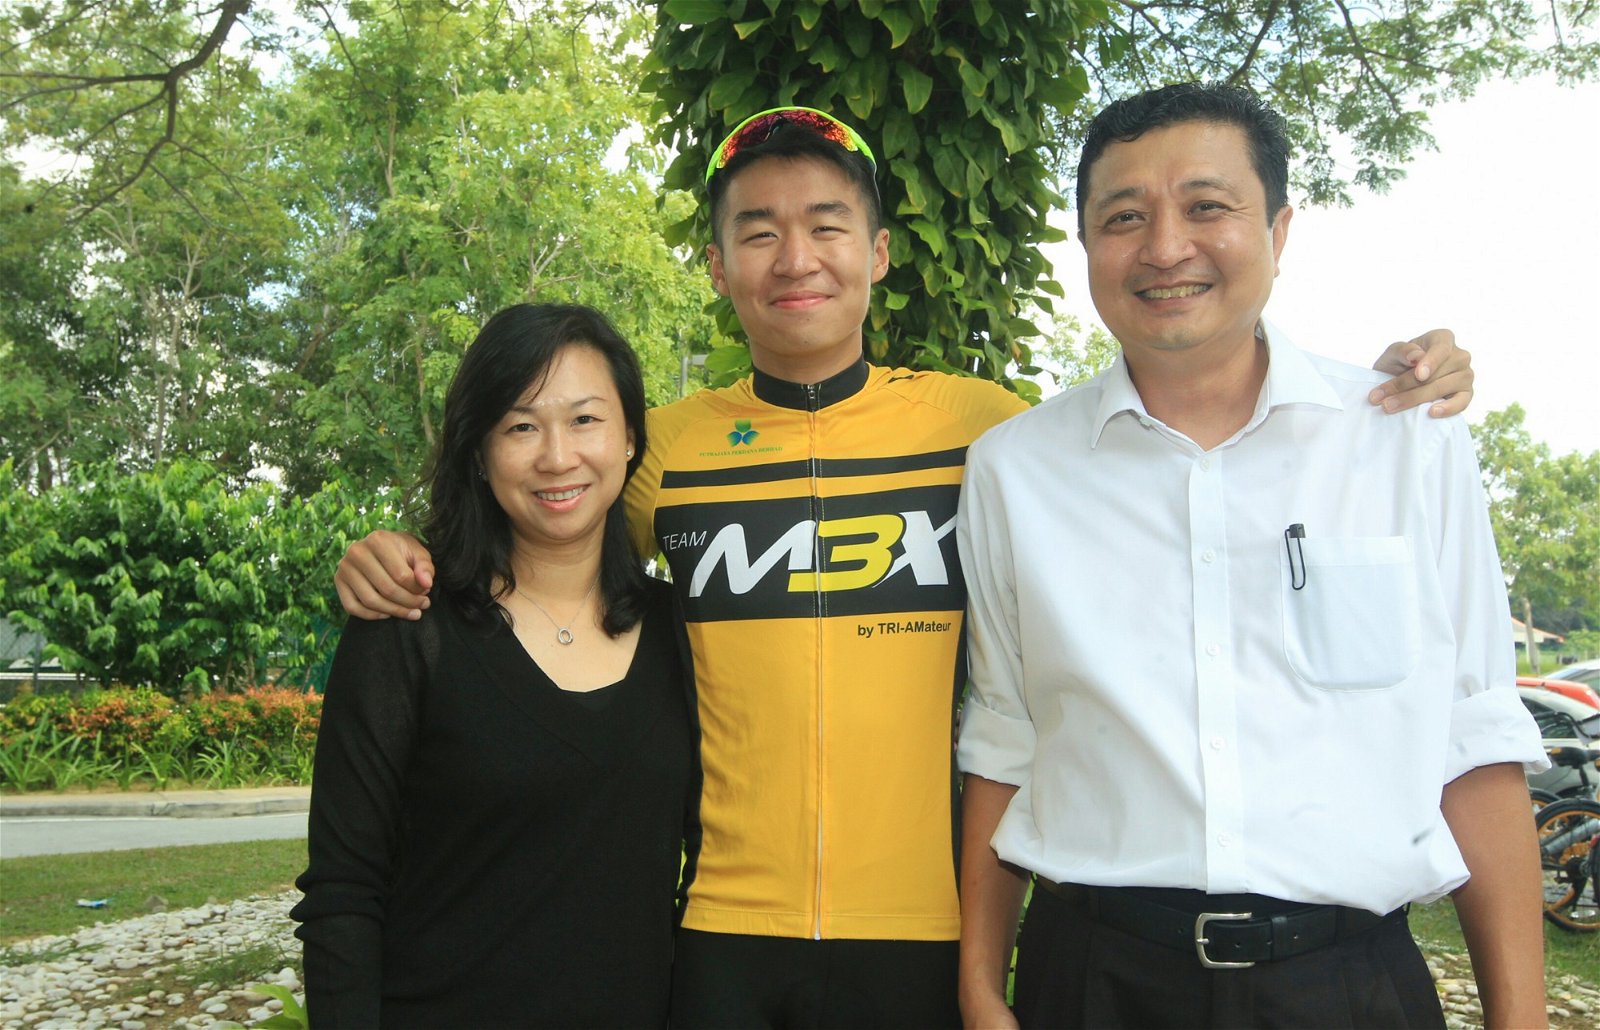 家人的支持对选手来说非常重要，陈凯绅感激父母一直大力鼓励及支持他接触运动，让他在求学时期也可以与运动为伍。